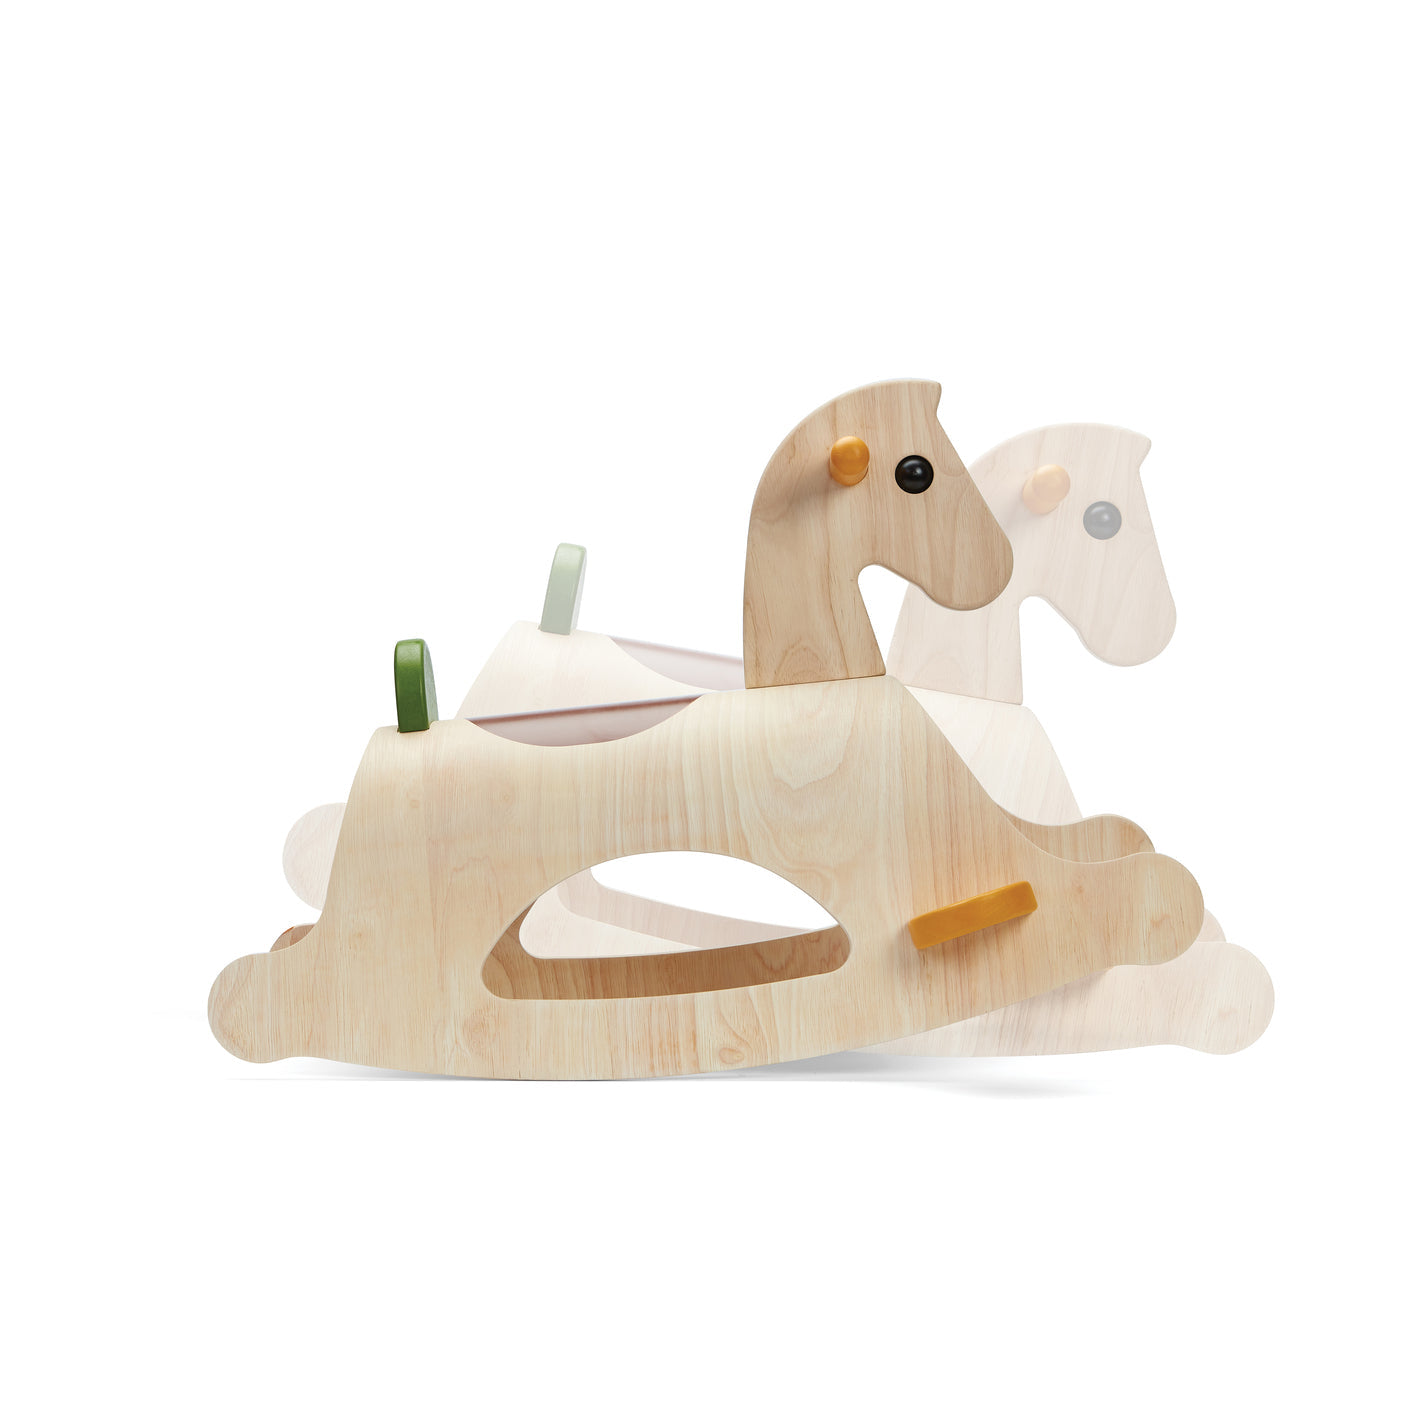 Palomino wooden kids rocking horse